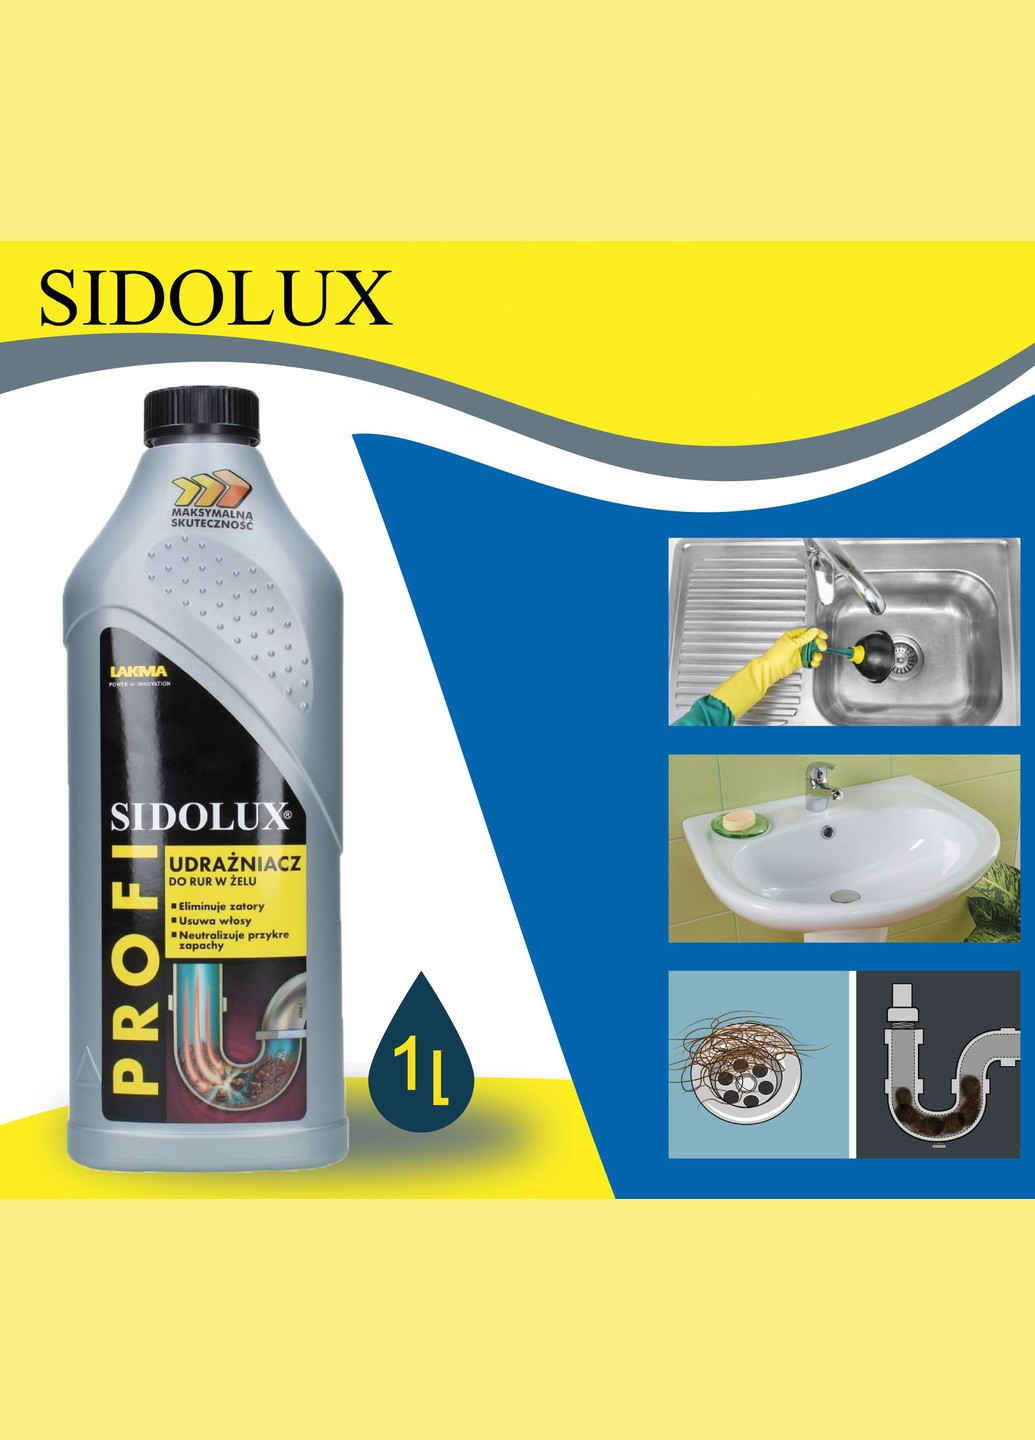 Засіб для прочищення стоків, труб, сифонів SIDOLUX PROFI 1л гелевий очищувач для усунення та профілактики засорів у каналізації Lakma (264209627)